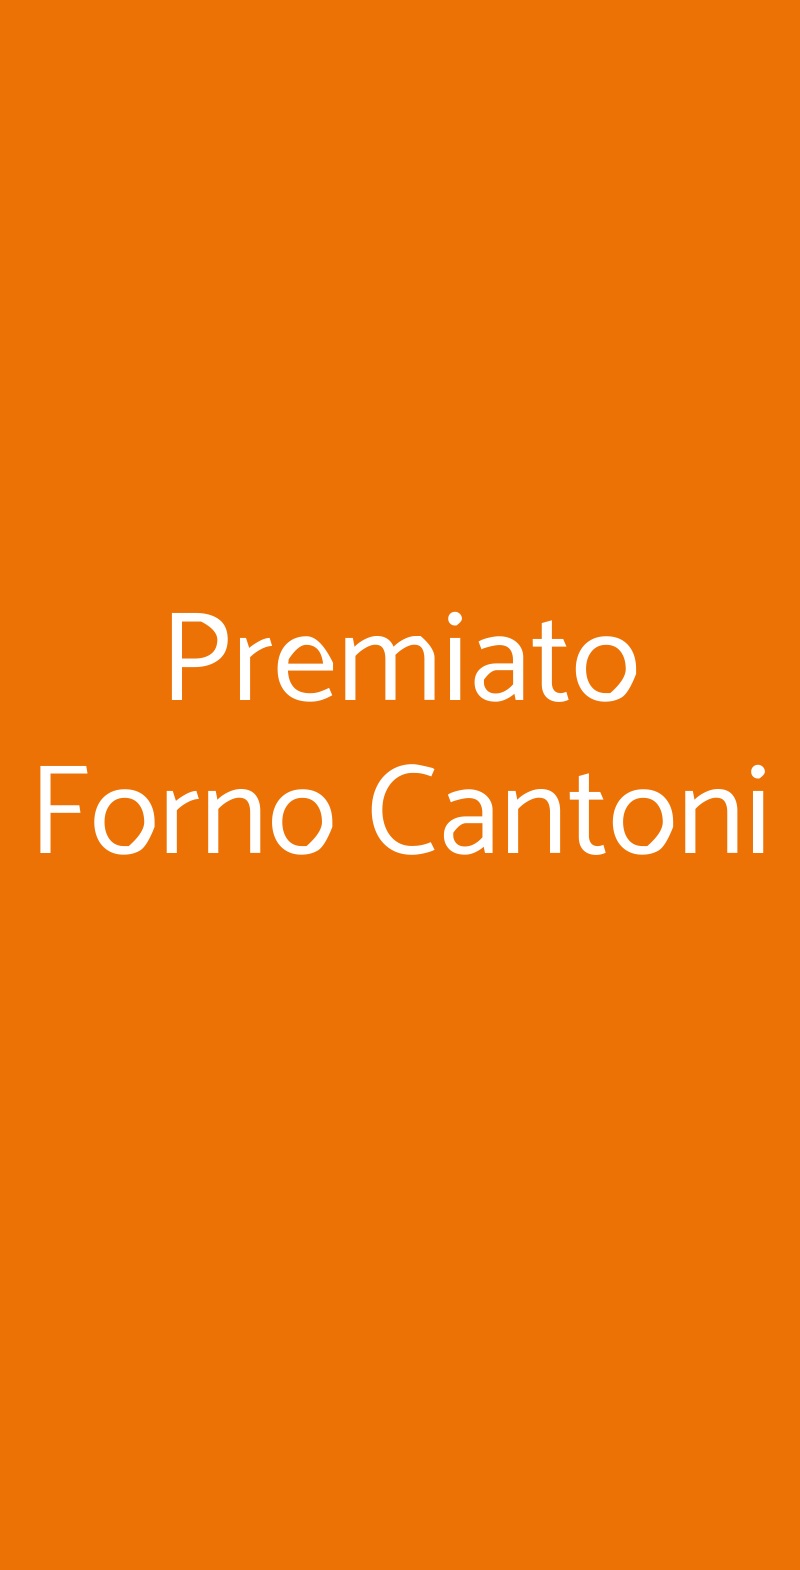 Premiato Forno Cantoni Milano menù 1 pagina